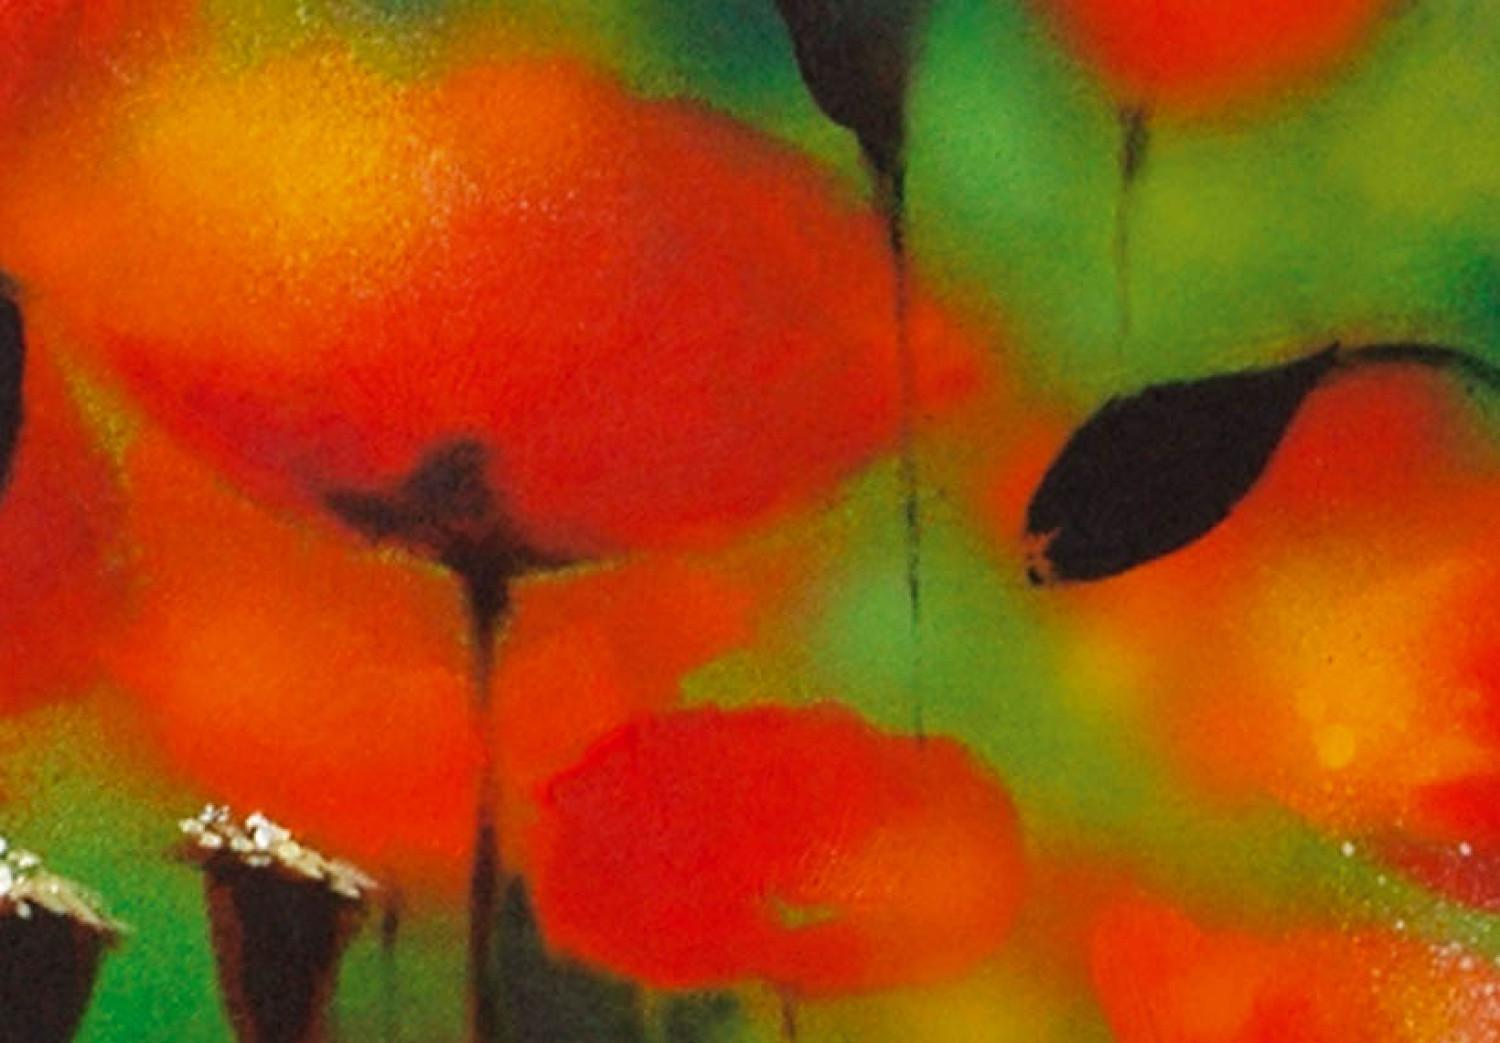 Cuadro Amapolas rojas - un prado lleno de flores de colores muy saturados